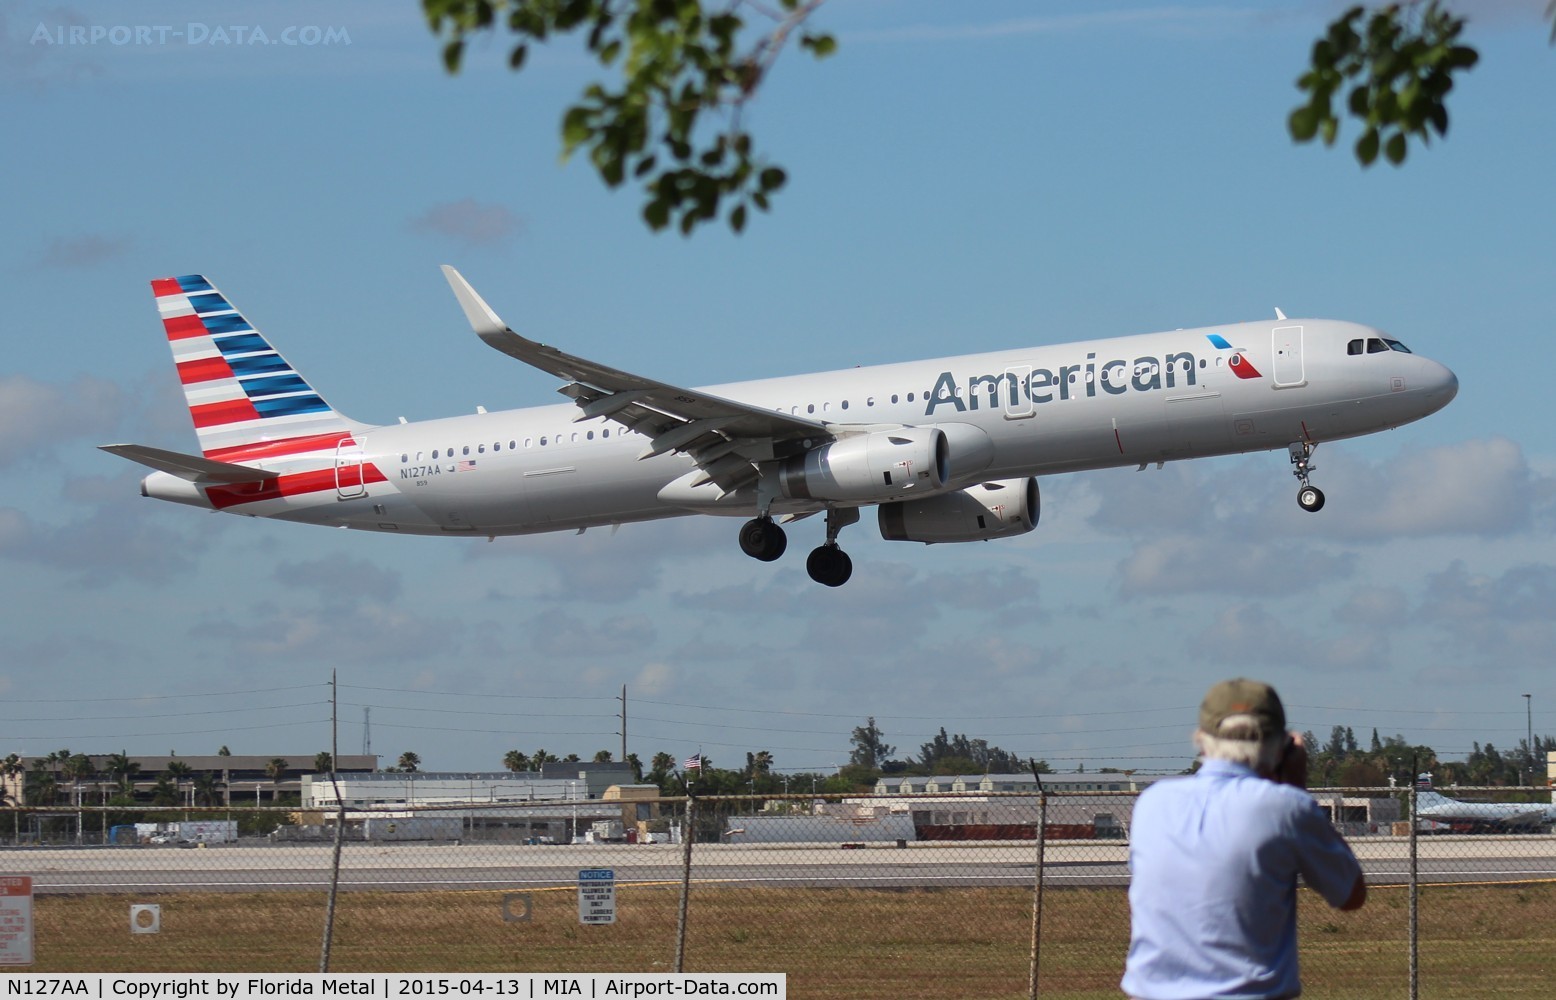 N127AA, 2014 Airbus A321-231 C/N 6334, American